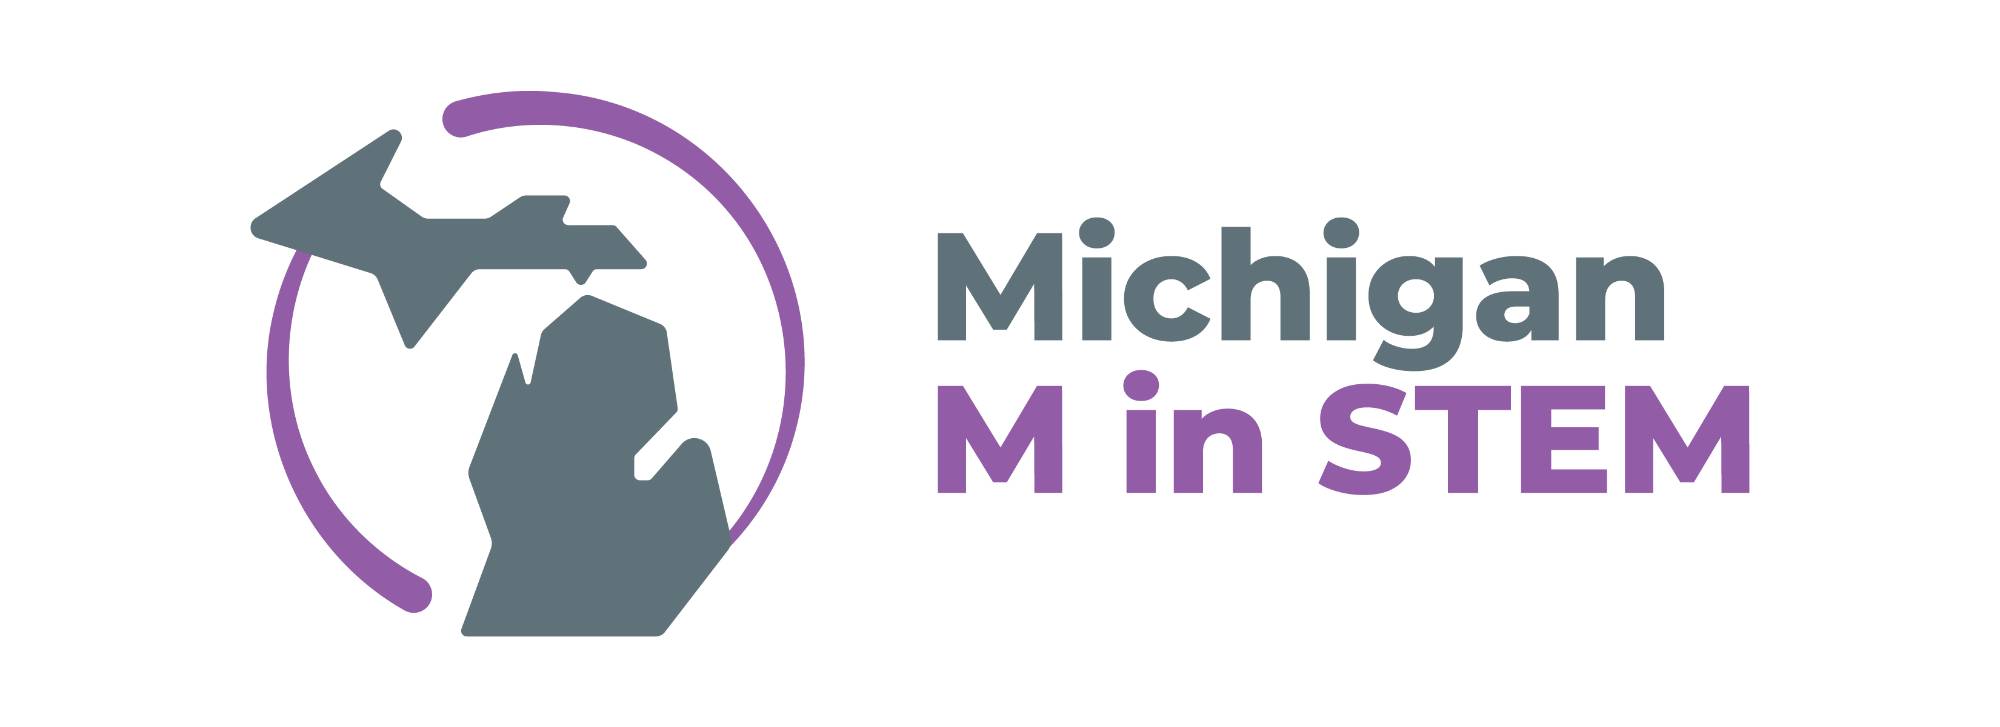 Michigan M in STEM Collaborative logo